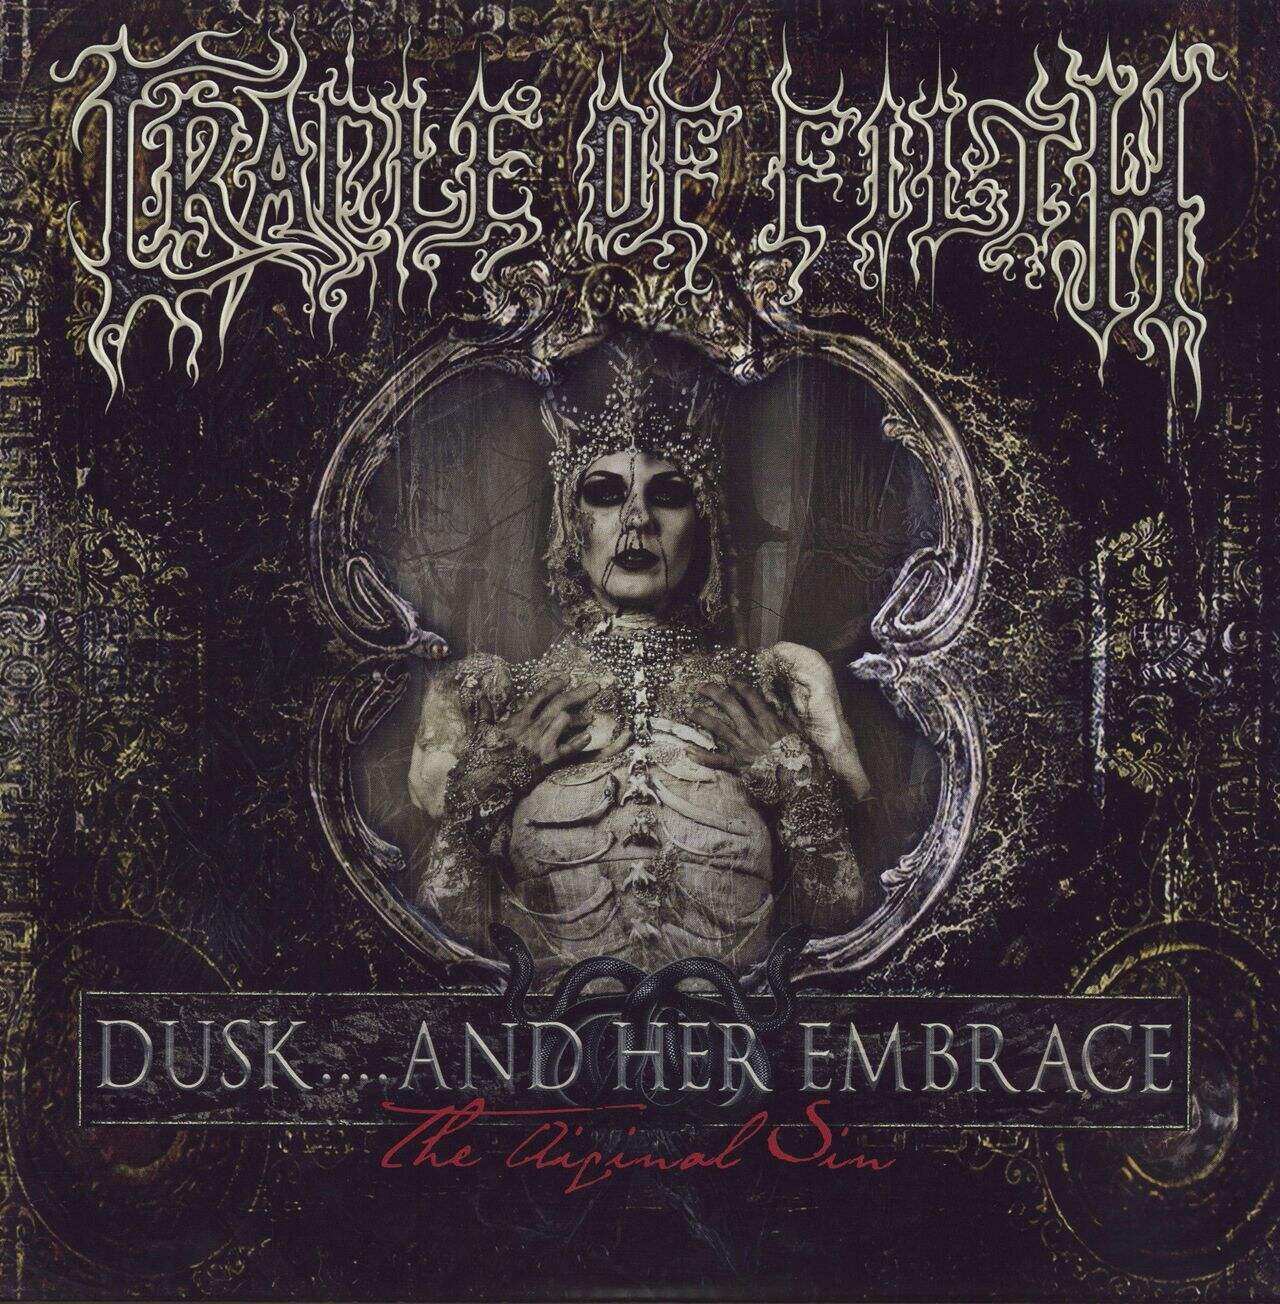 Cradle Of Filth Dusk... And Her Embrace The Original Sin UK 2-LP vinyl set